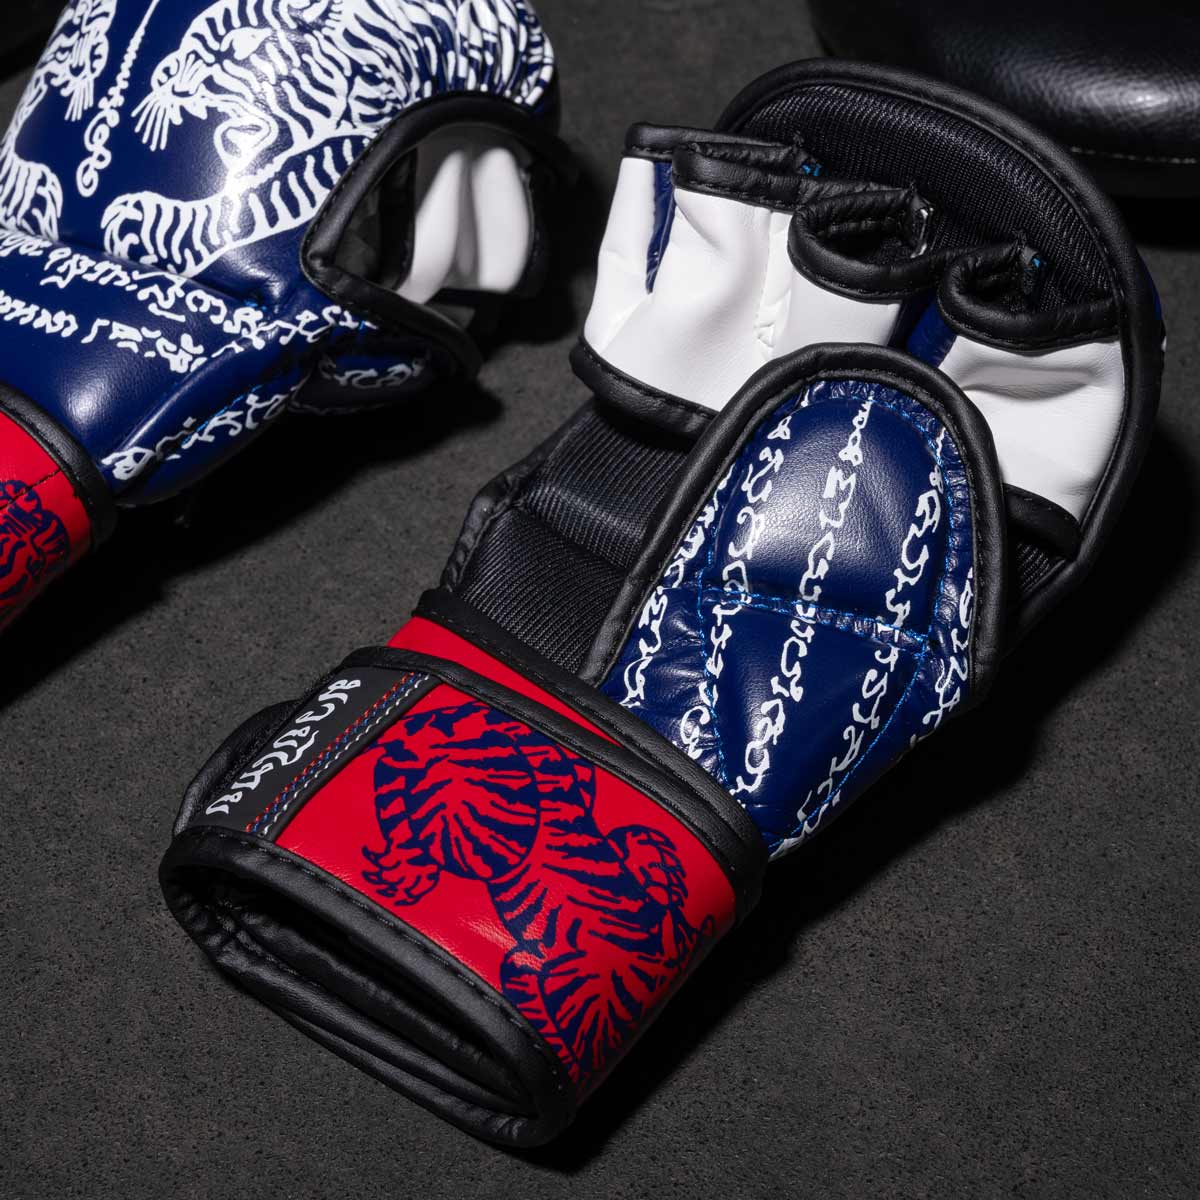 Phantom Muay Thai Handschuhe für Thaiboxen und MMA Sparring, Wettkampf und Training. Im traditionellen Sak Yant Design und der Farbe Blau/Rot.